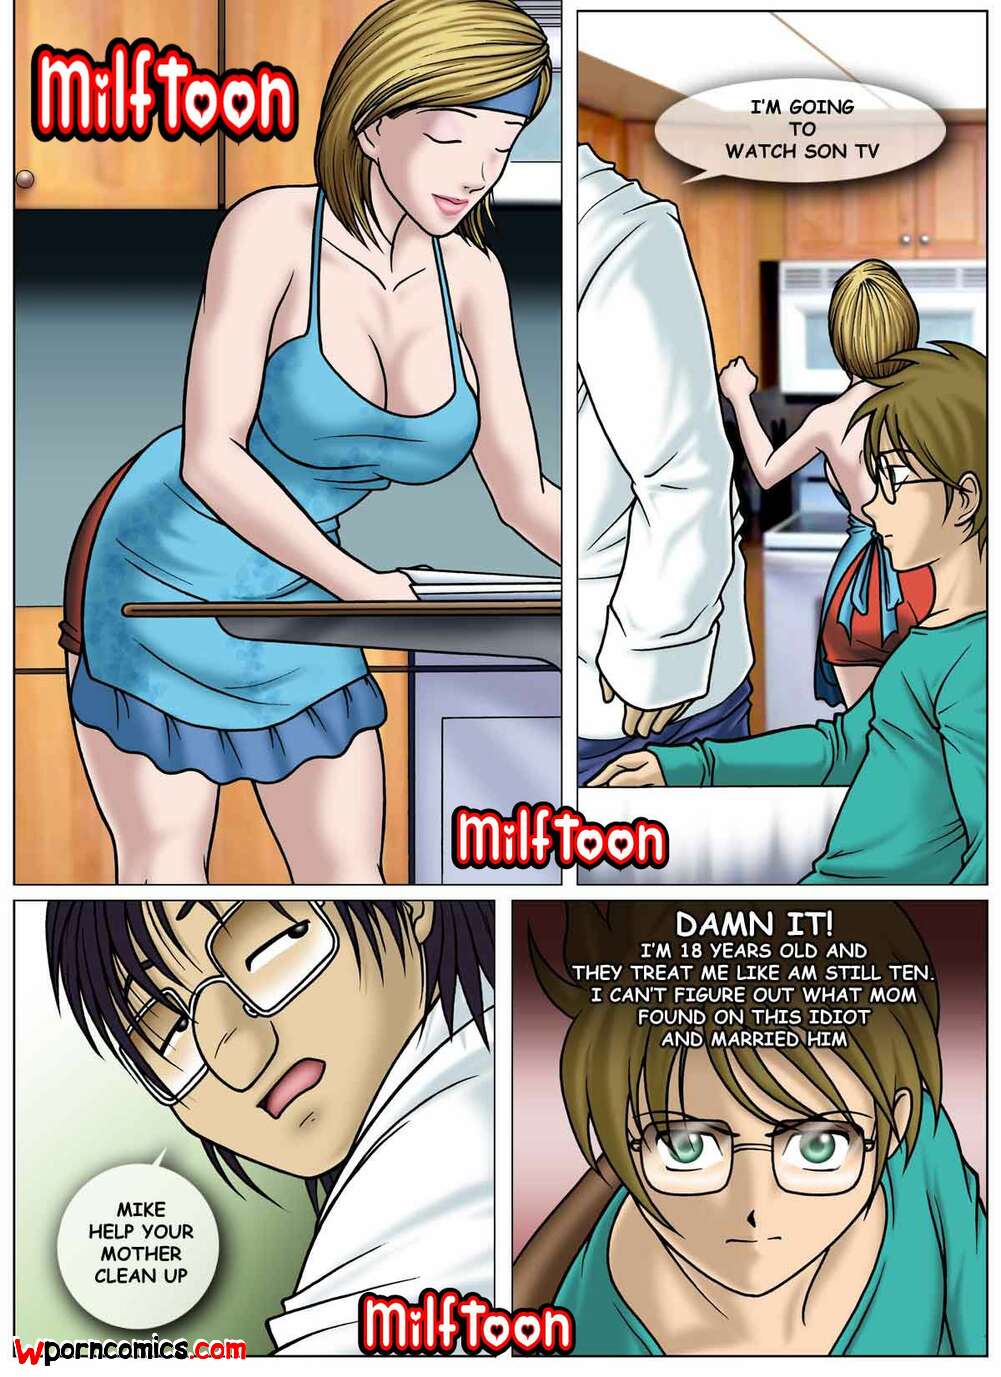 1001px x 1377px - â„¹ï¸ Porn comics Suprizing. Chapter 1. MILFToon. Erotic comic guy began to â„¹ï¸  | Porn comics hentai adult only | comicsporn.site